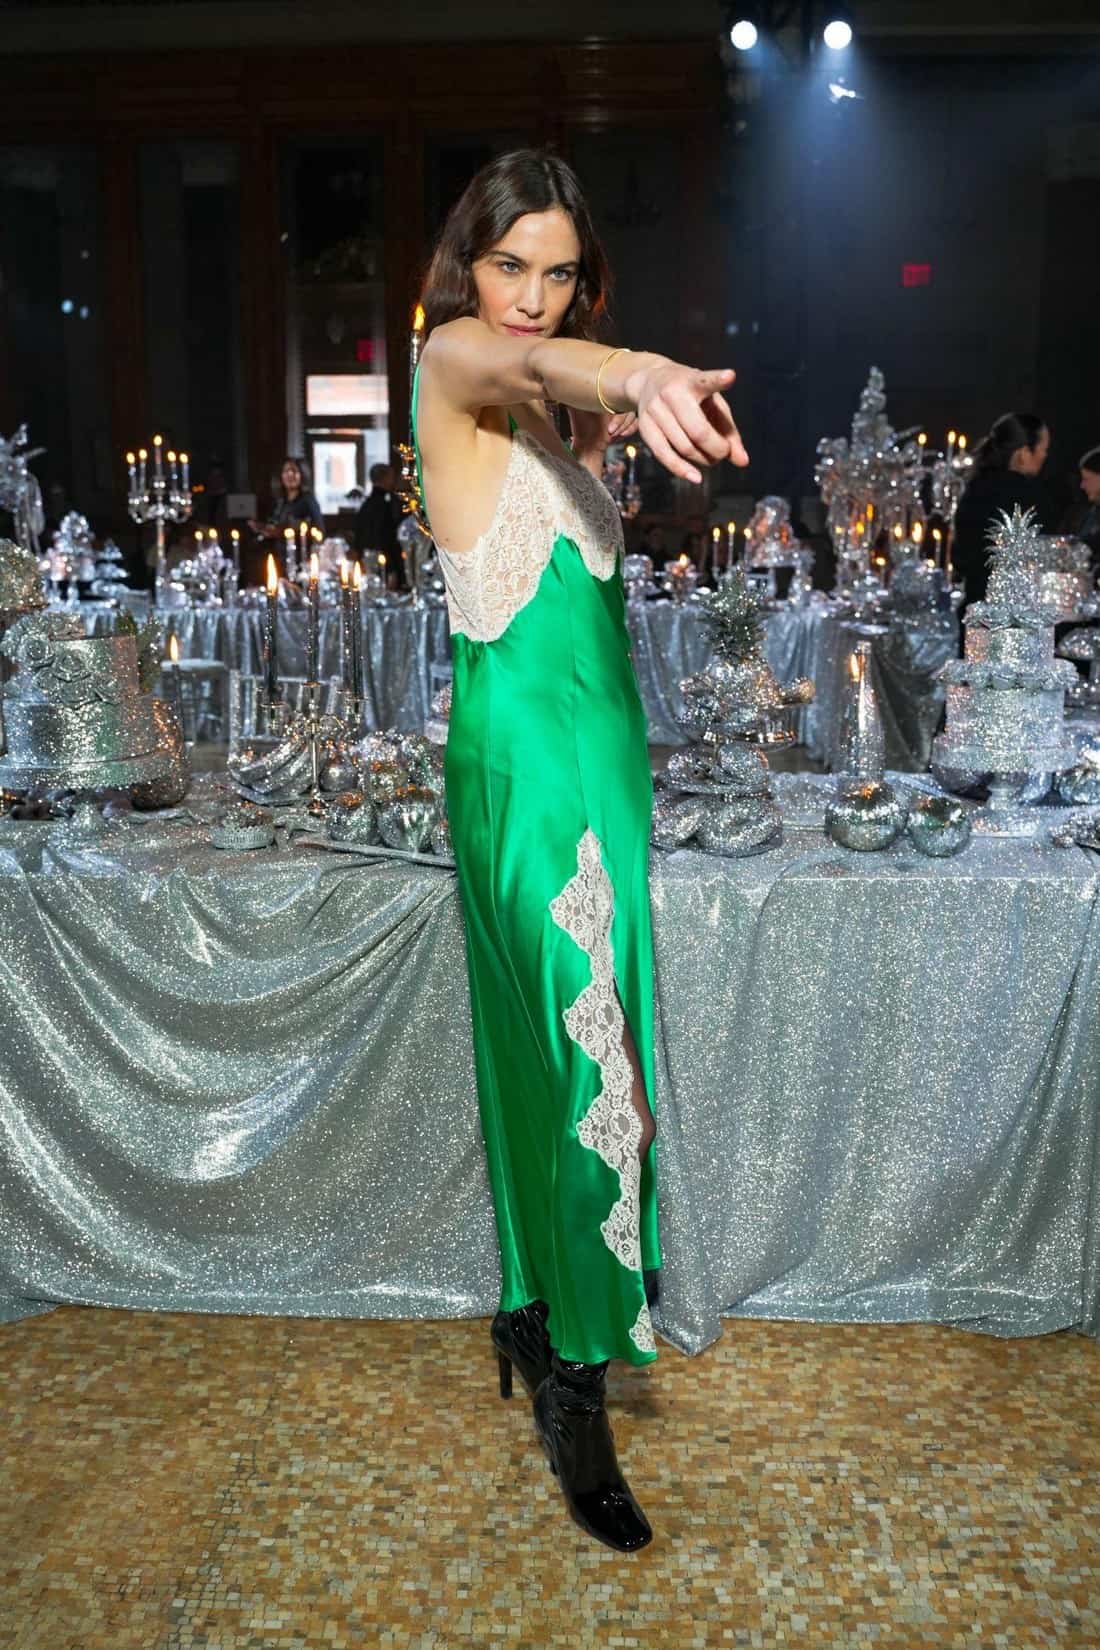 Alexa Chung Attends Rodarte FW 23 Show in Green Lingerie Dress